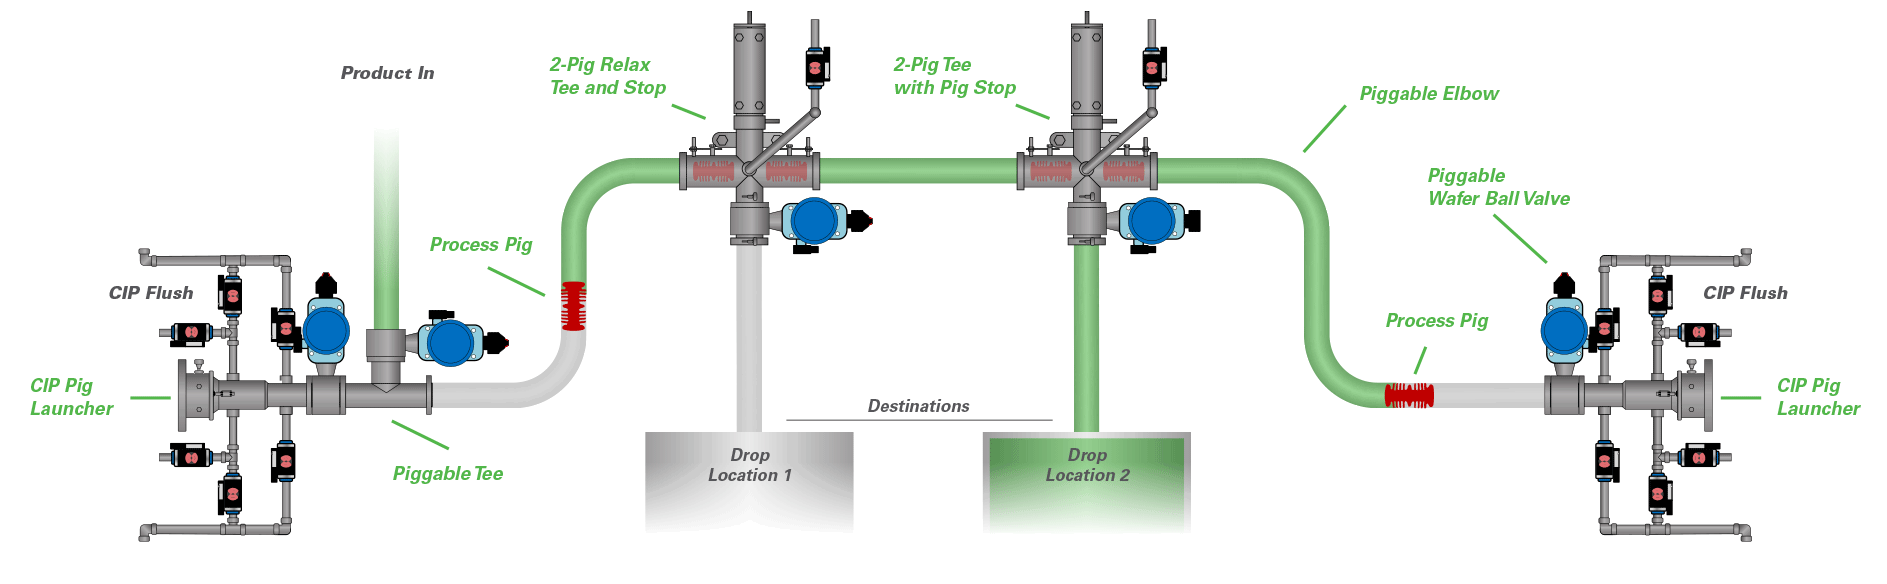 Pigging System Diagram